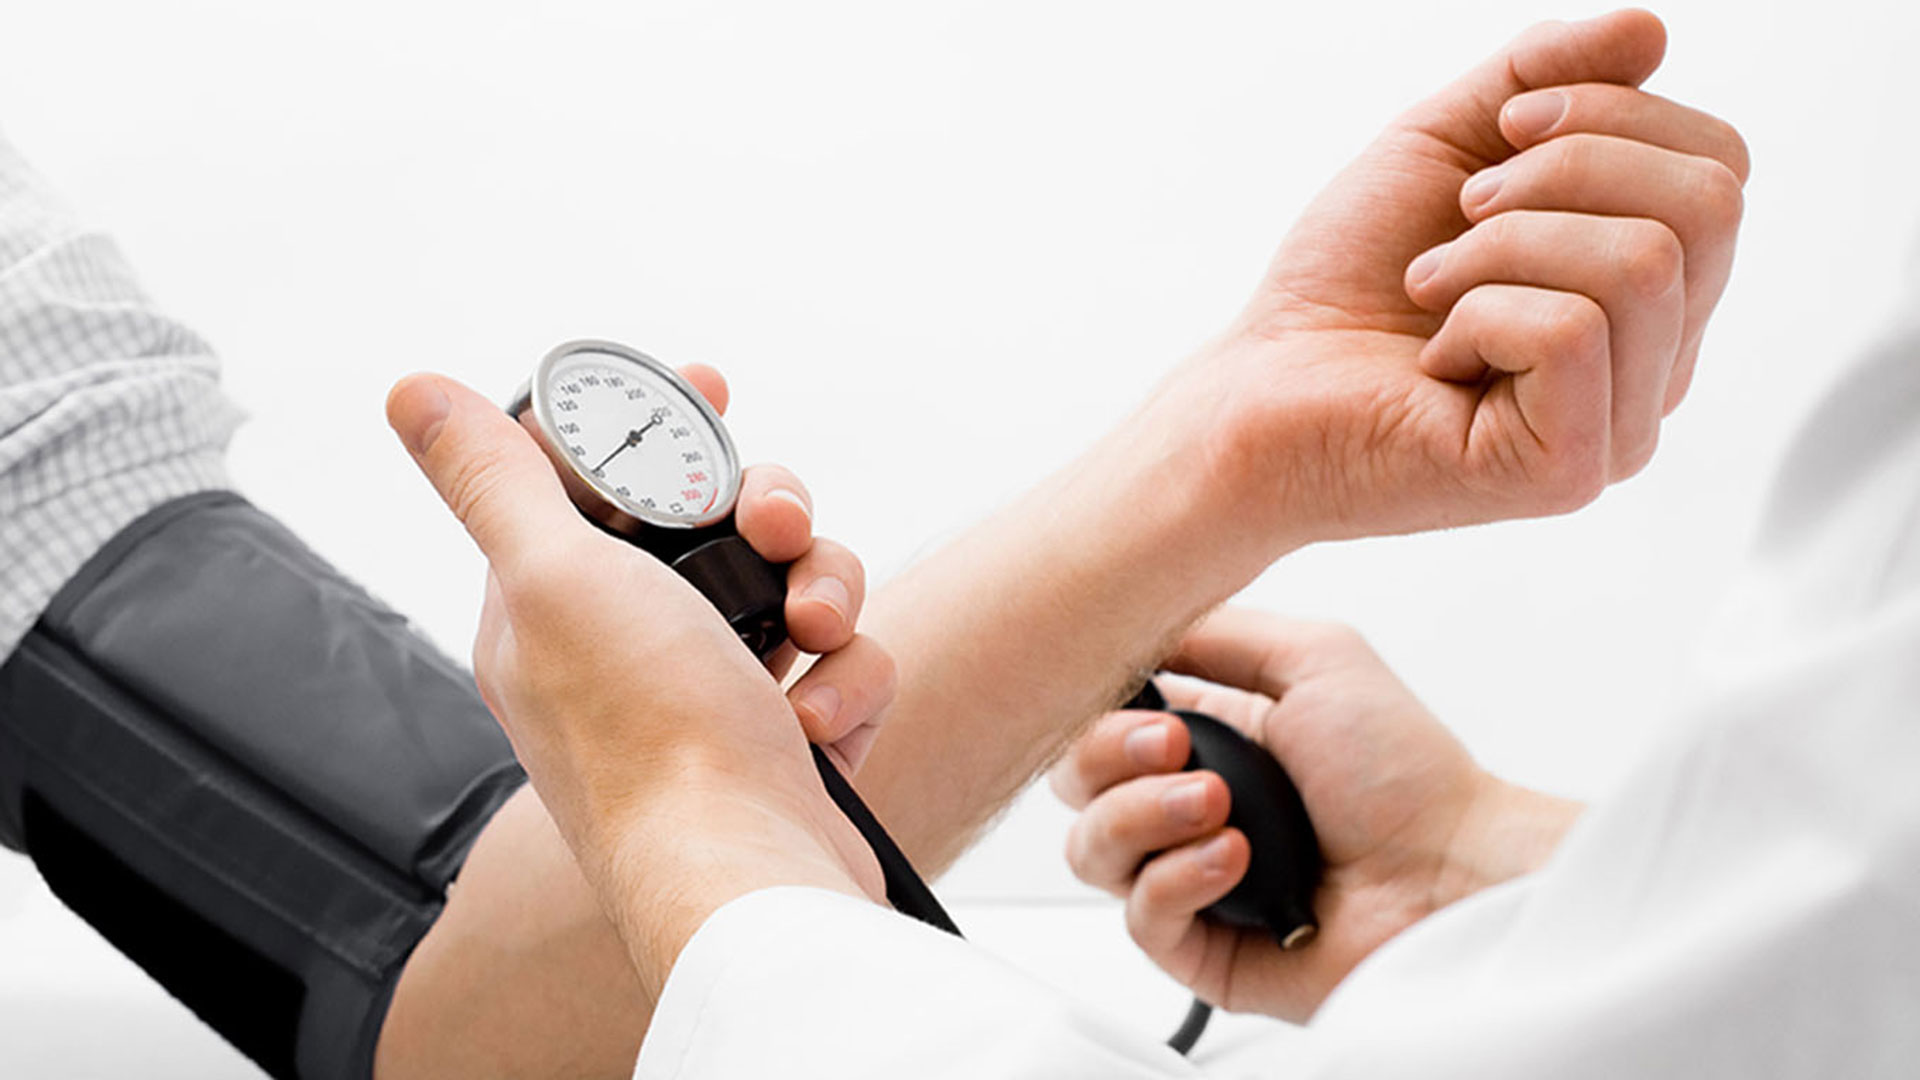 La Sociedad Europea de Cardiología y la Sociedad Europea de Hipertensión clasifican la presión arterial de 130/85 mmHg como alta-normal 